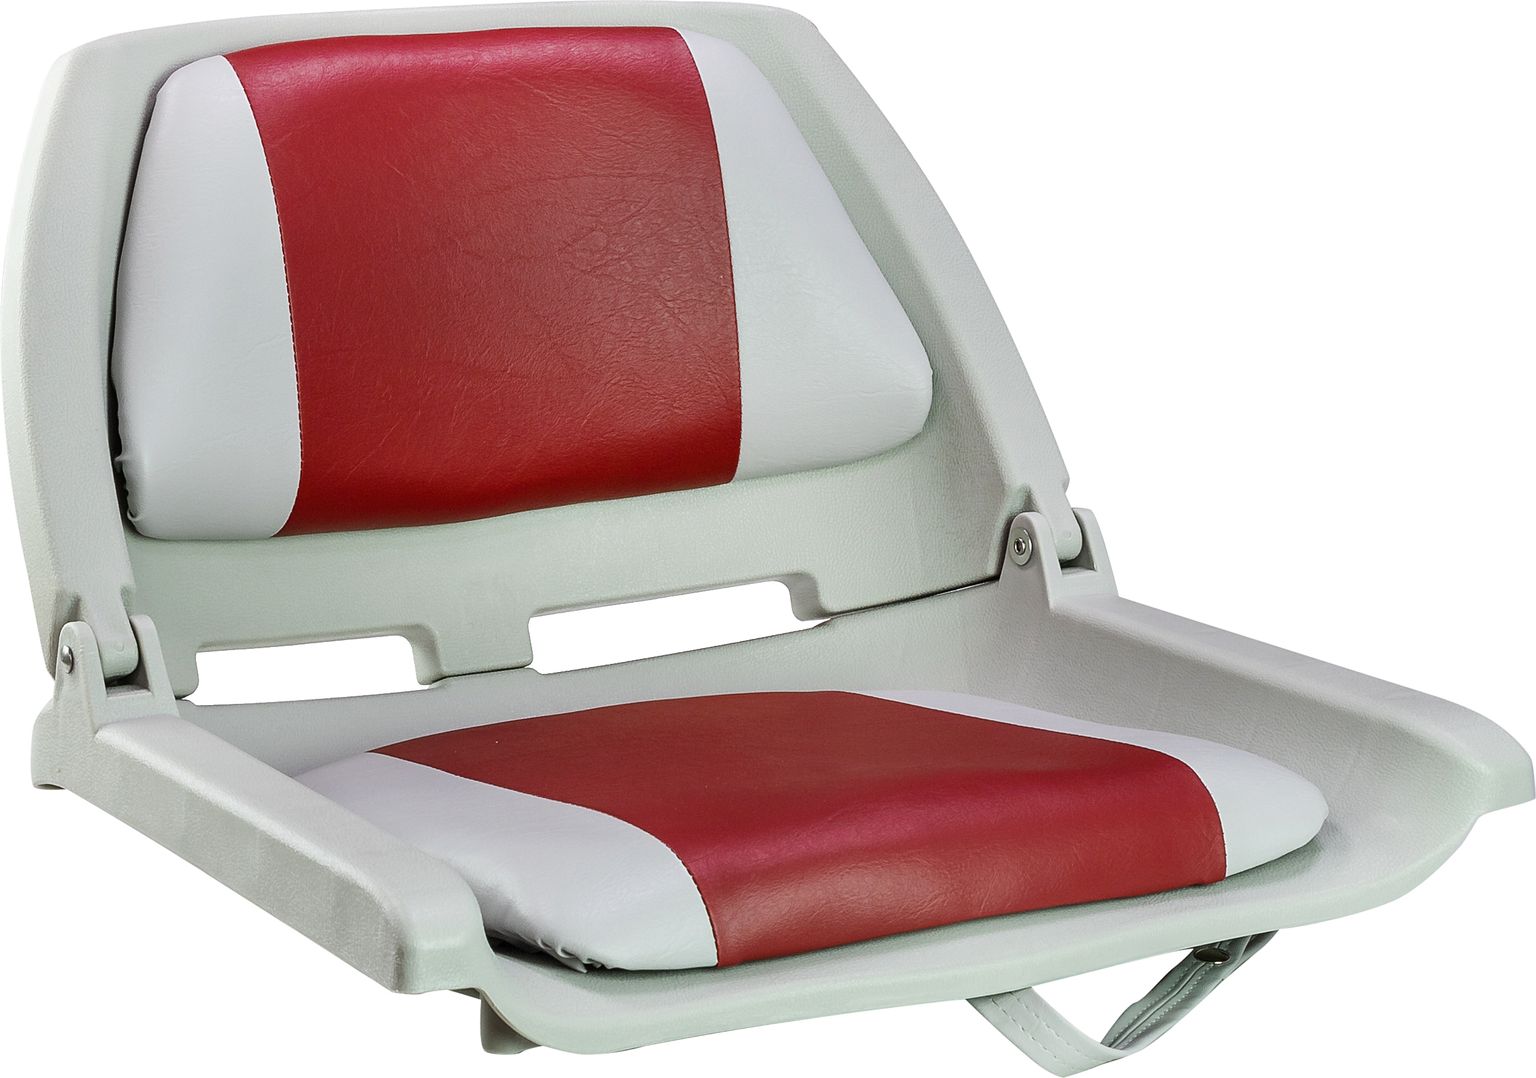 Кресло мягкое складное, обивка винил, цвет серый/красный, Marine Rocket 75109GR-MR кемпинговое складное кресло trek planet